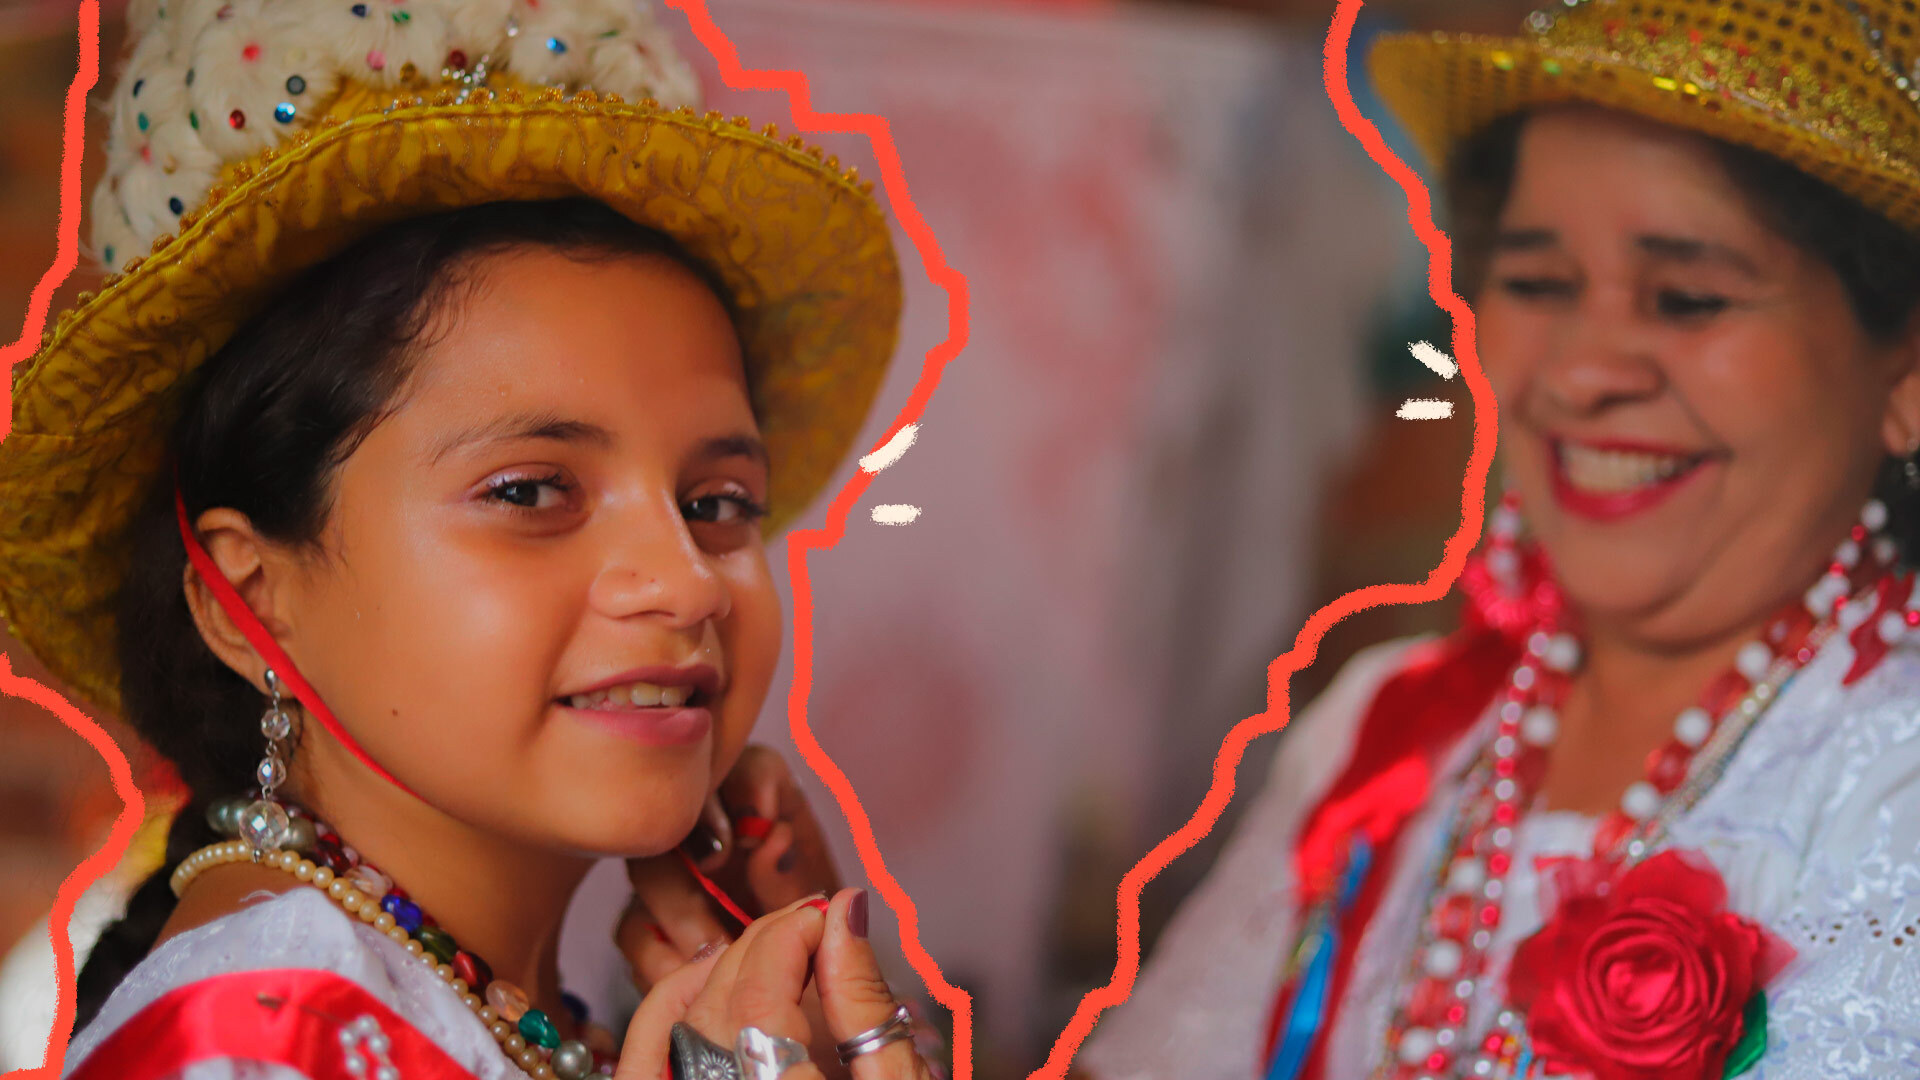 Marujada de Bragança: foto de uma menina que sorri, enquanto uma mulher amarra nela um chapéu dourado com plumas brancas. Ambas vestem roupas típicas da festa da Marujada de Bragança.